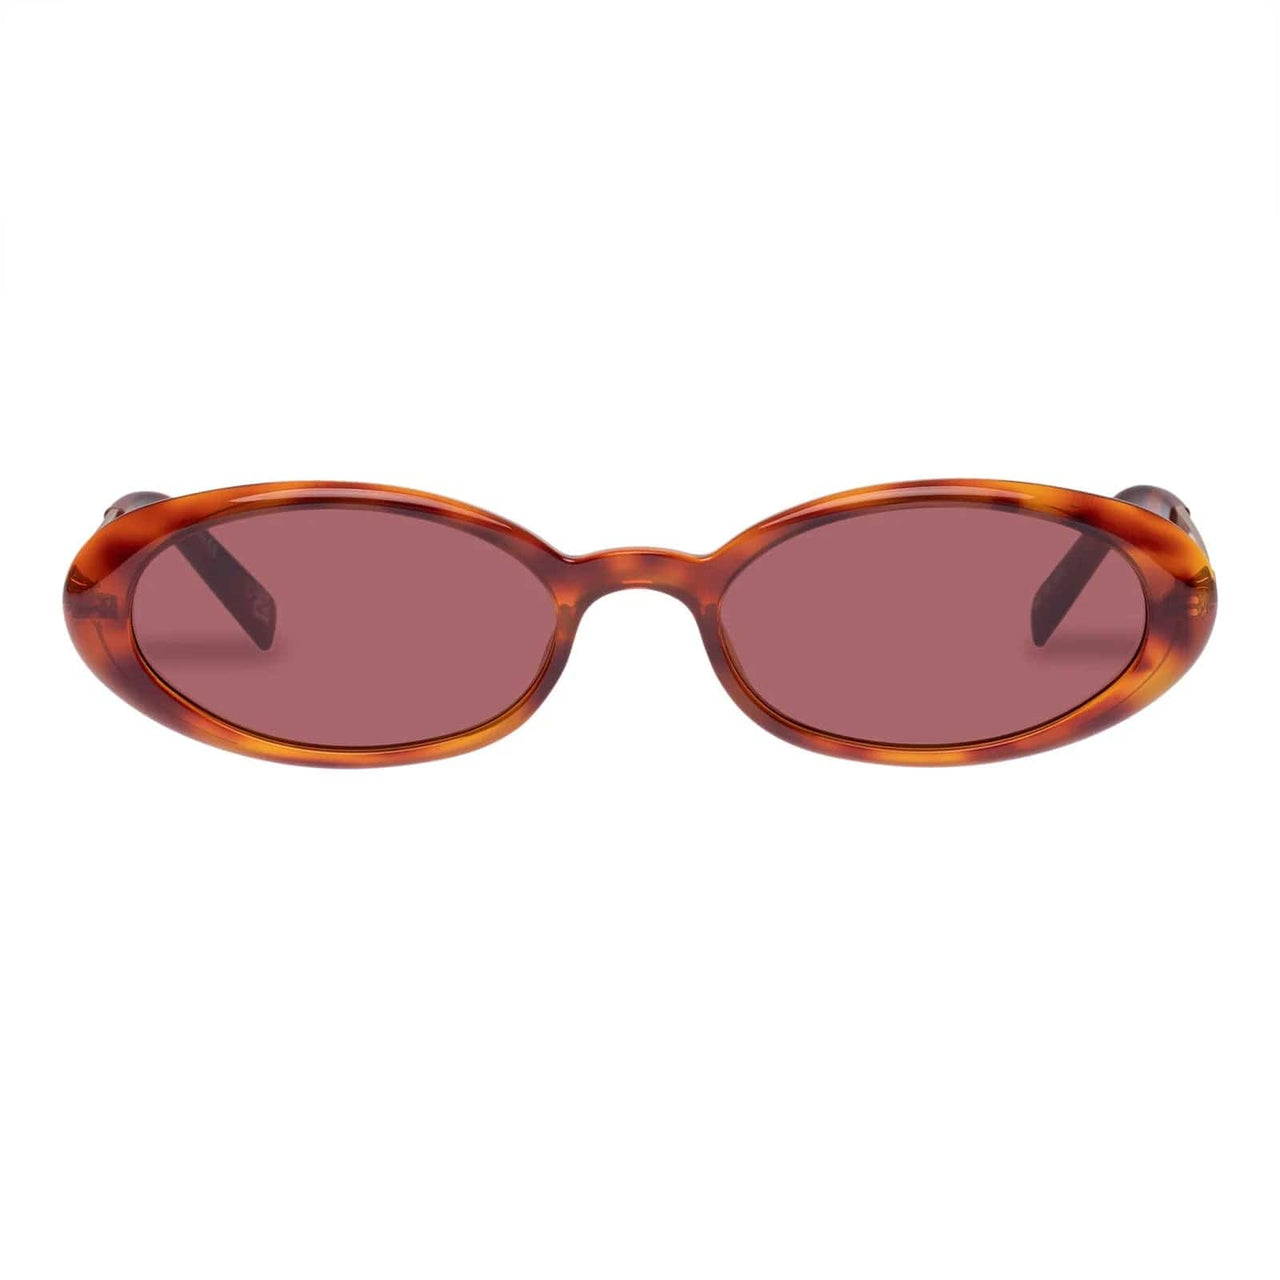 Magnifique Sunglasses Tort, Sunglasses by Le Spec | LIT Boutique